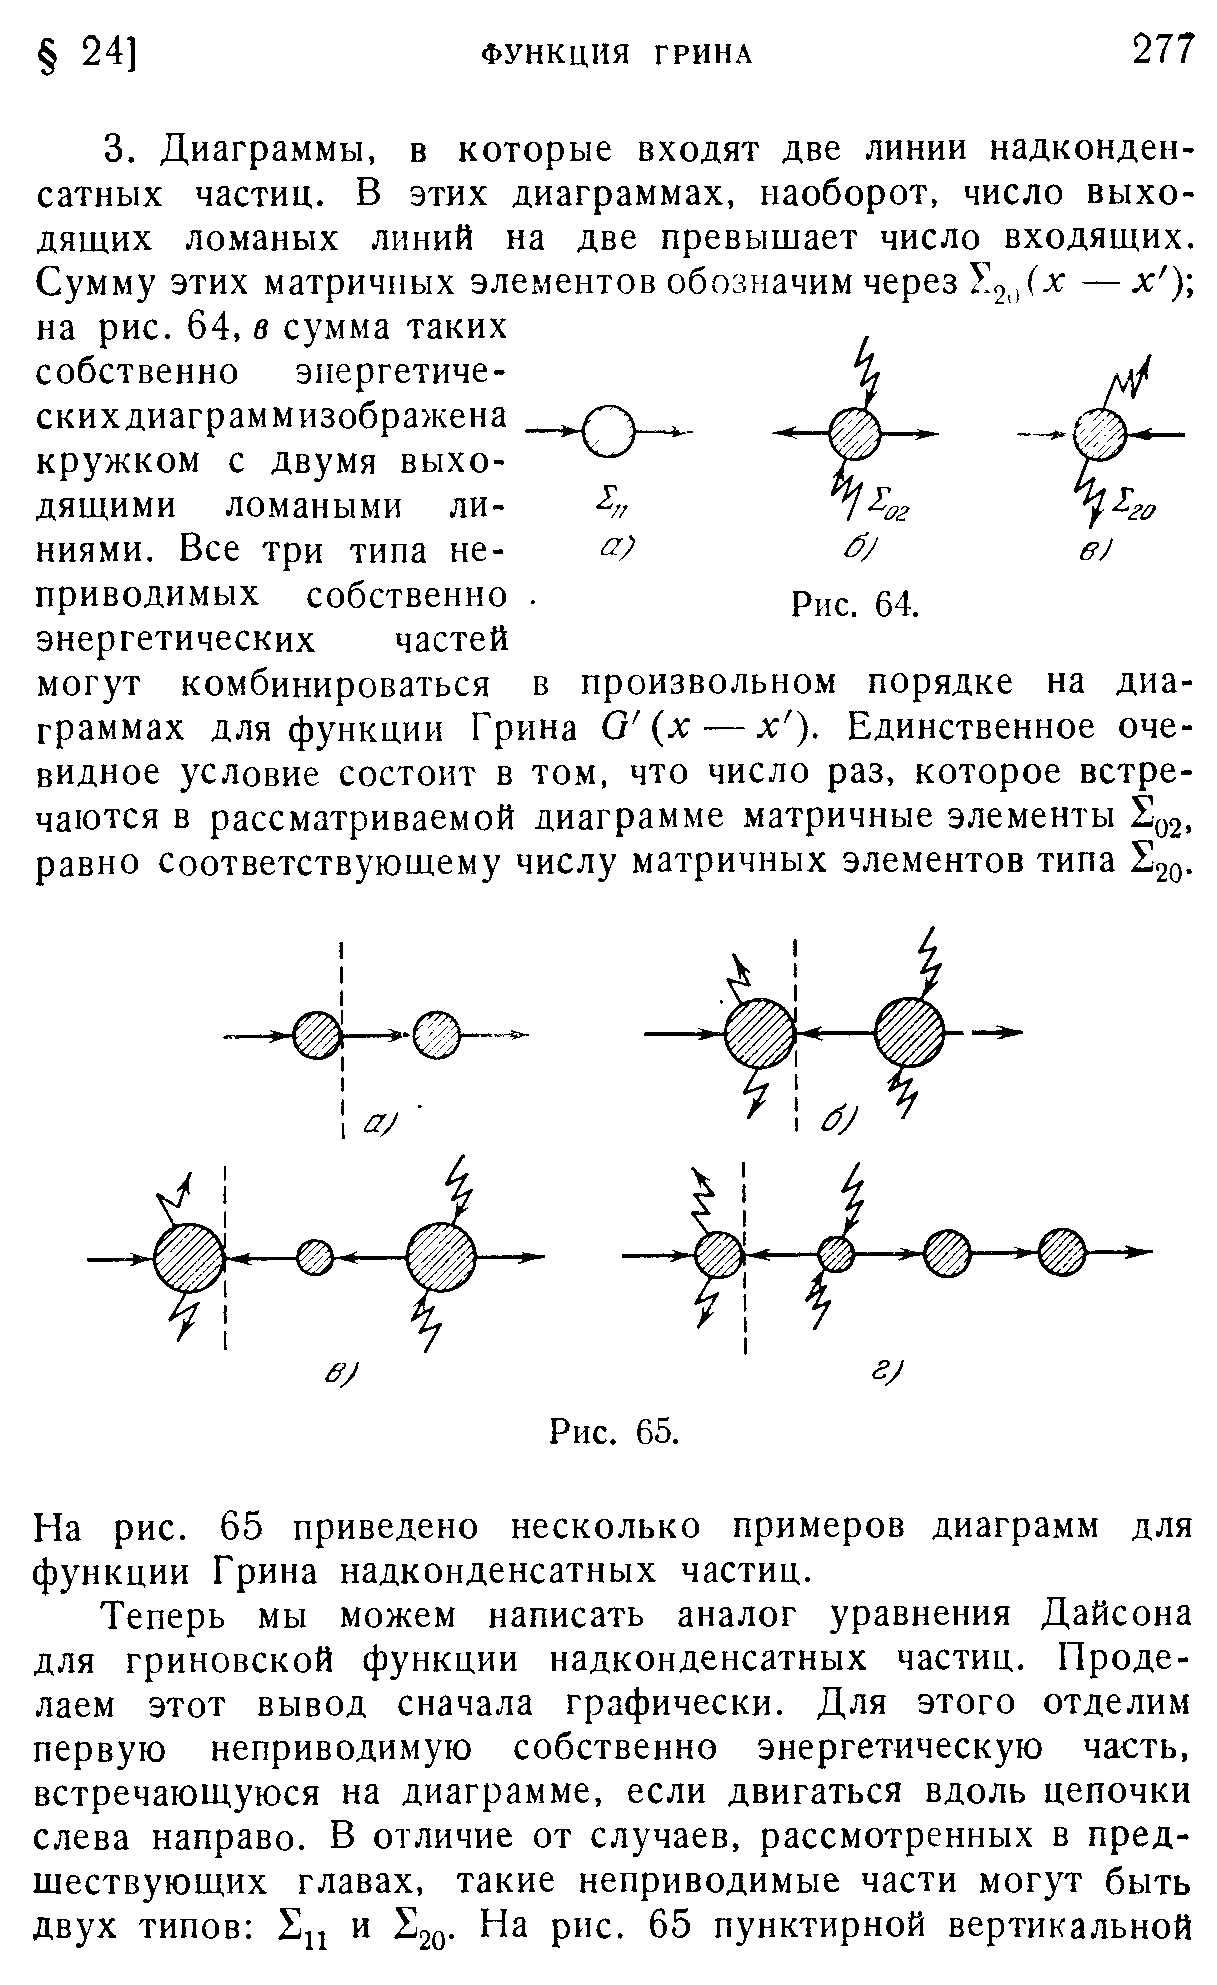 На рис. 65 приведено несколько примеров диаграмм для функции Грина надконденсатных частиц.
